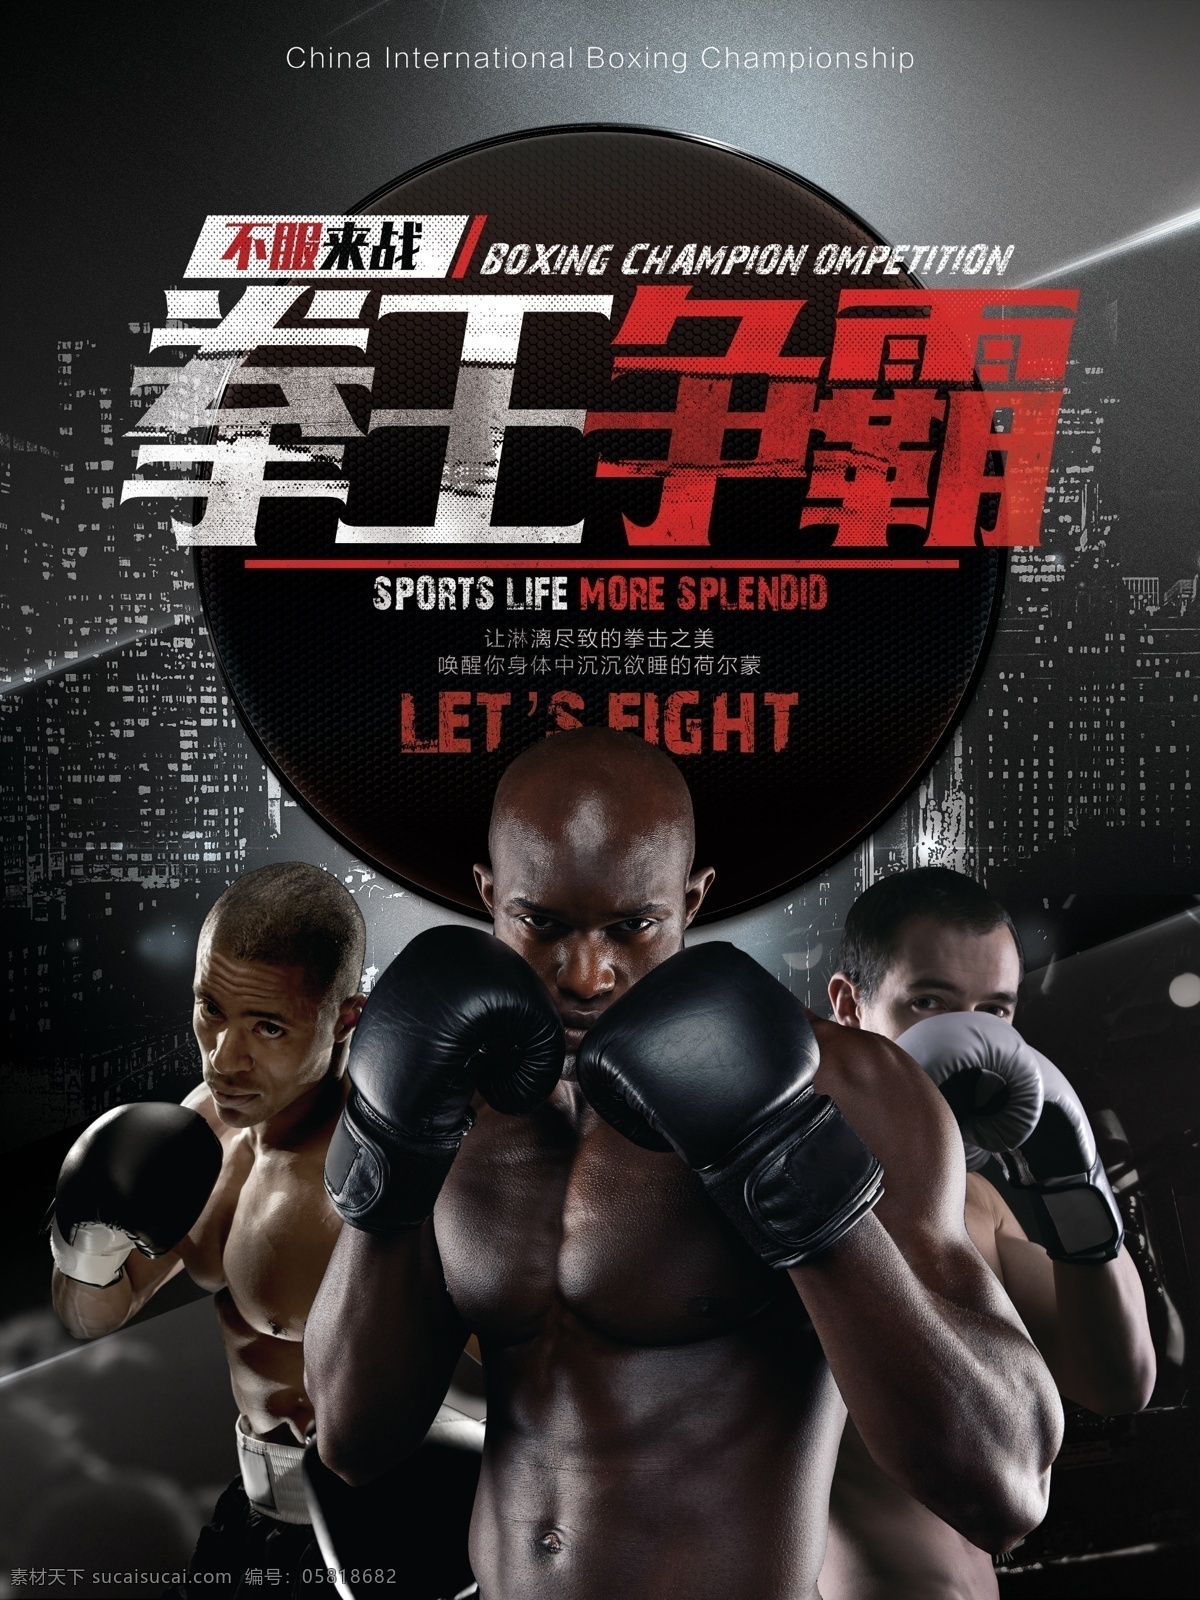 拳王 争霸赛 体育 竞技 宣传海报 拳击 搏击 争霸 力量 宣传 海报 展板 展板模板